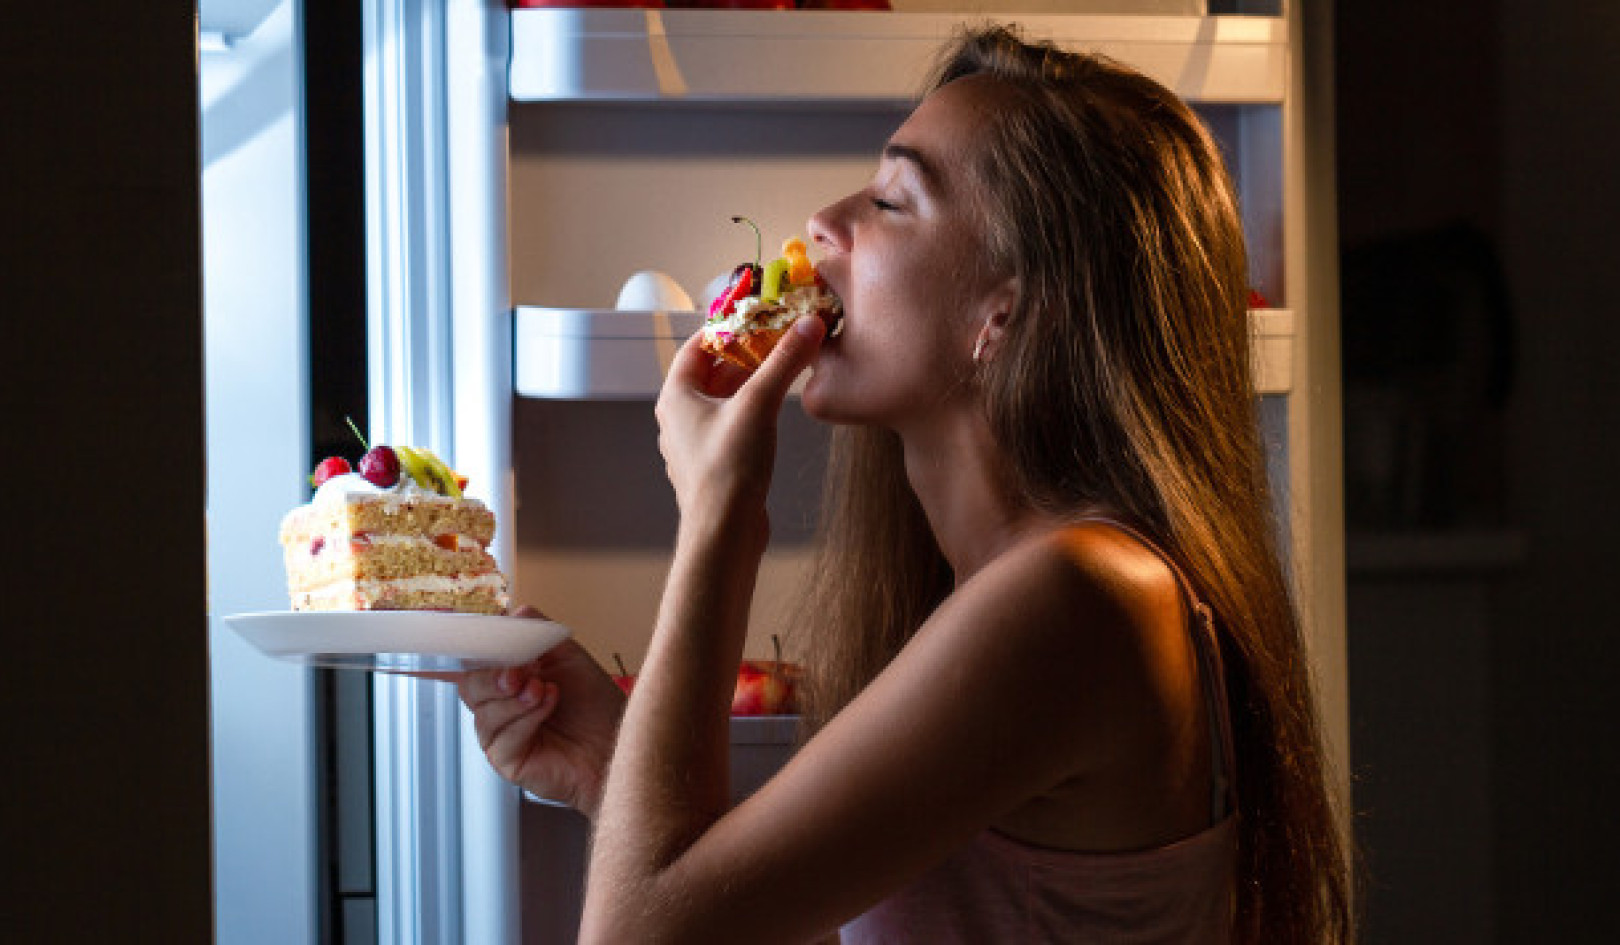 La réalité douce-amère : repenser nos habitudes alimentaires